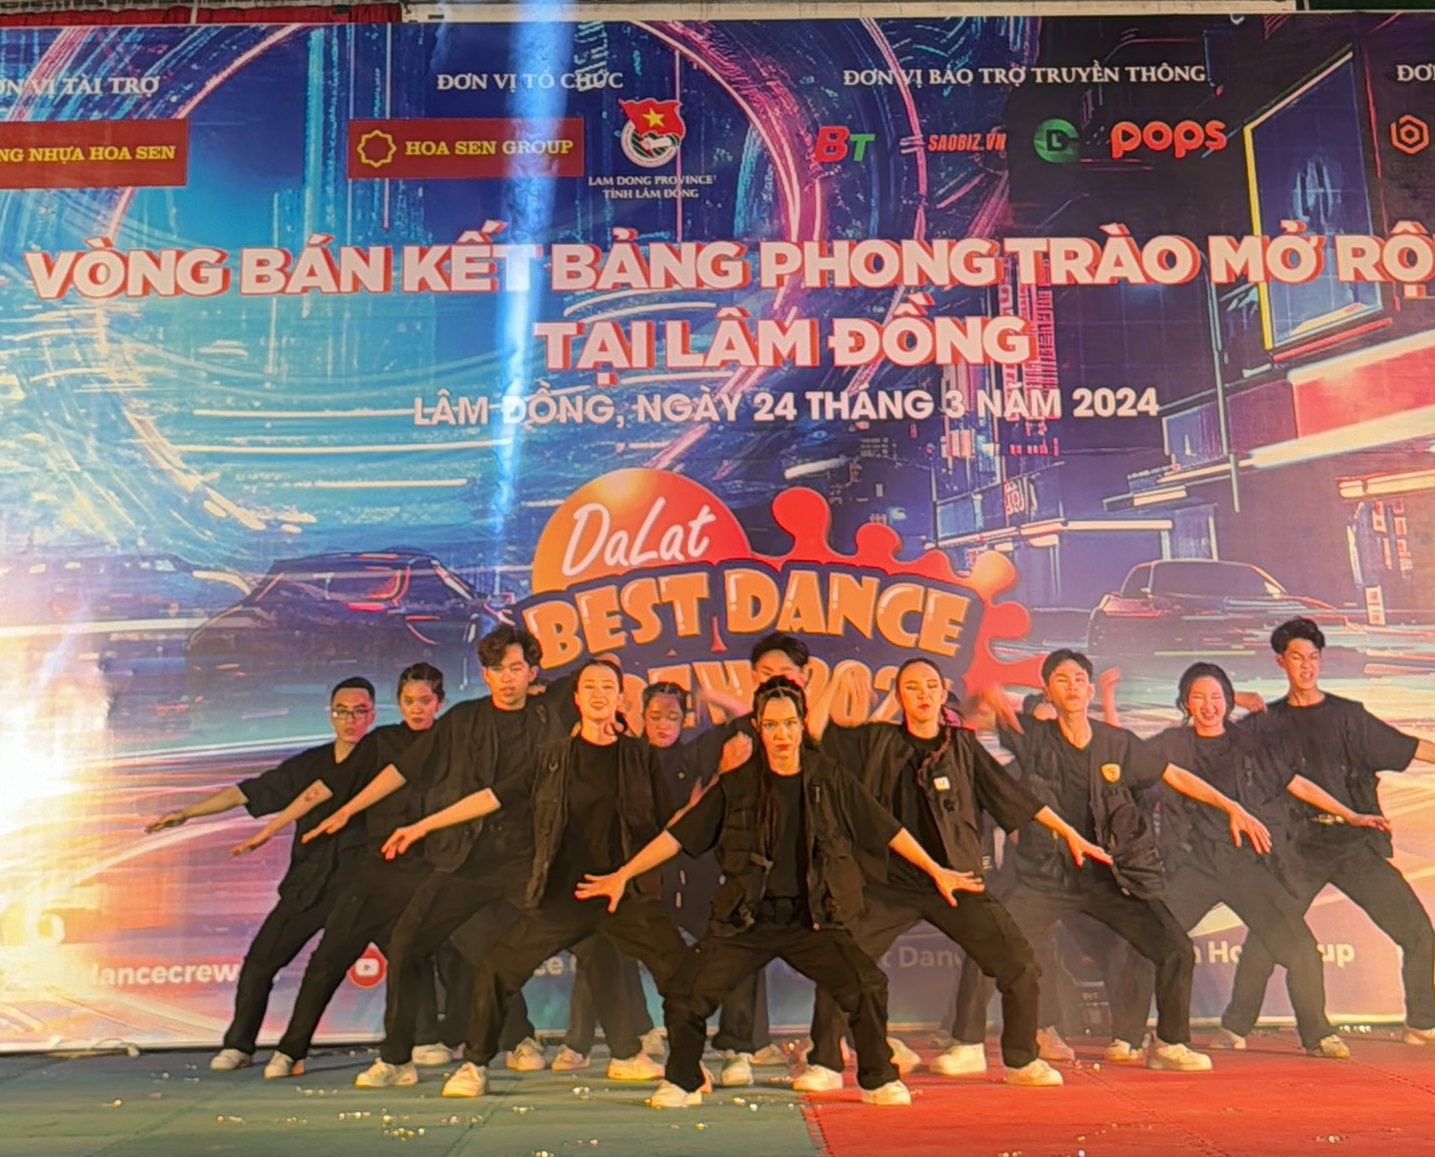 Lộ diện 14 nhóm nhảy phong trào tại Lâm Đồng lọt vào chung kết Dalat Best Dance Crew 2024 - Hoa Sen Home International Cup - 3